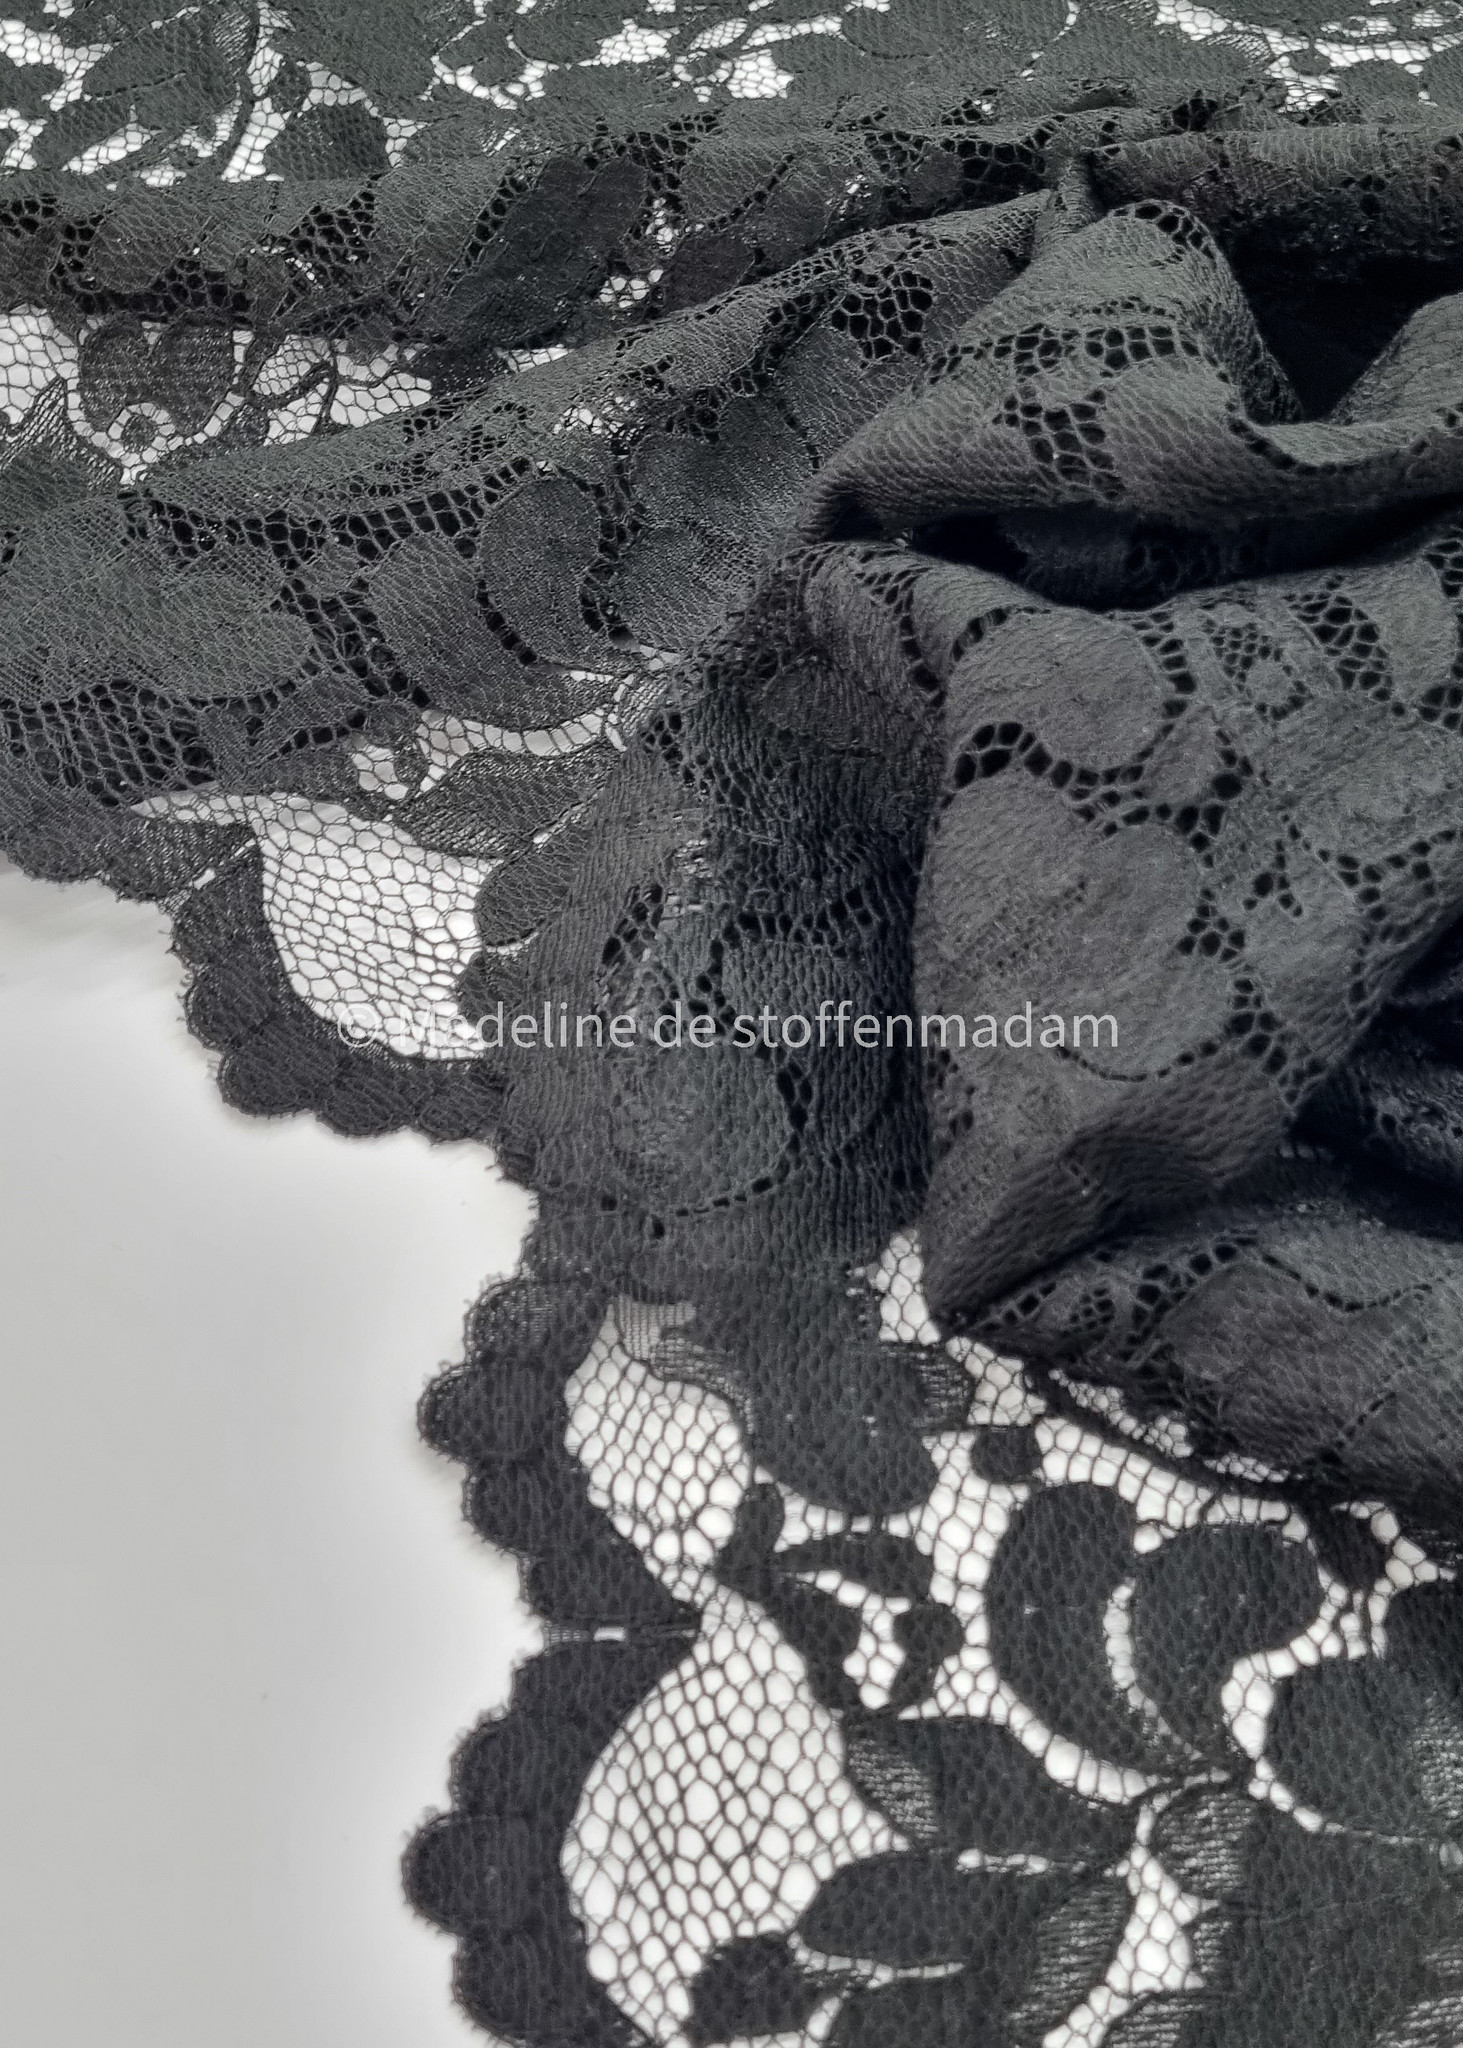 zwart kant geschulpte rand - hele mooie Madeline de stoffenmadam